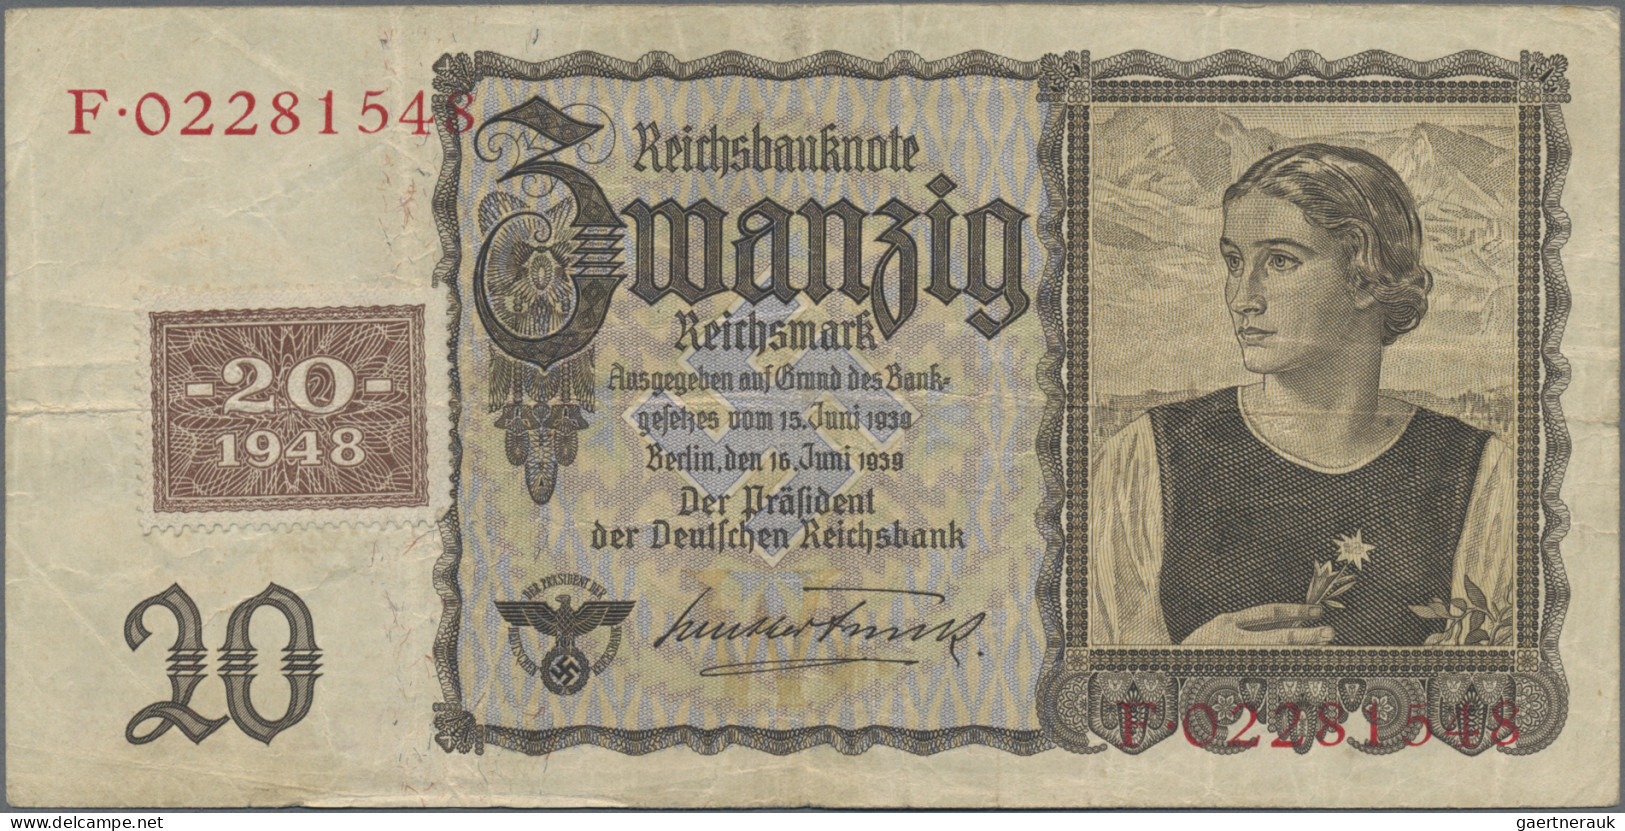 Deutschland - DDR: Deutsche Notenbank und Staatsbank der DDR, Lot mit 5 Banknote